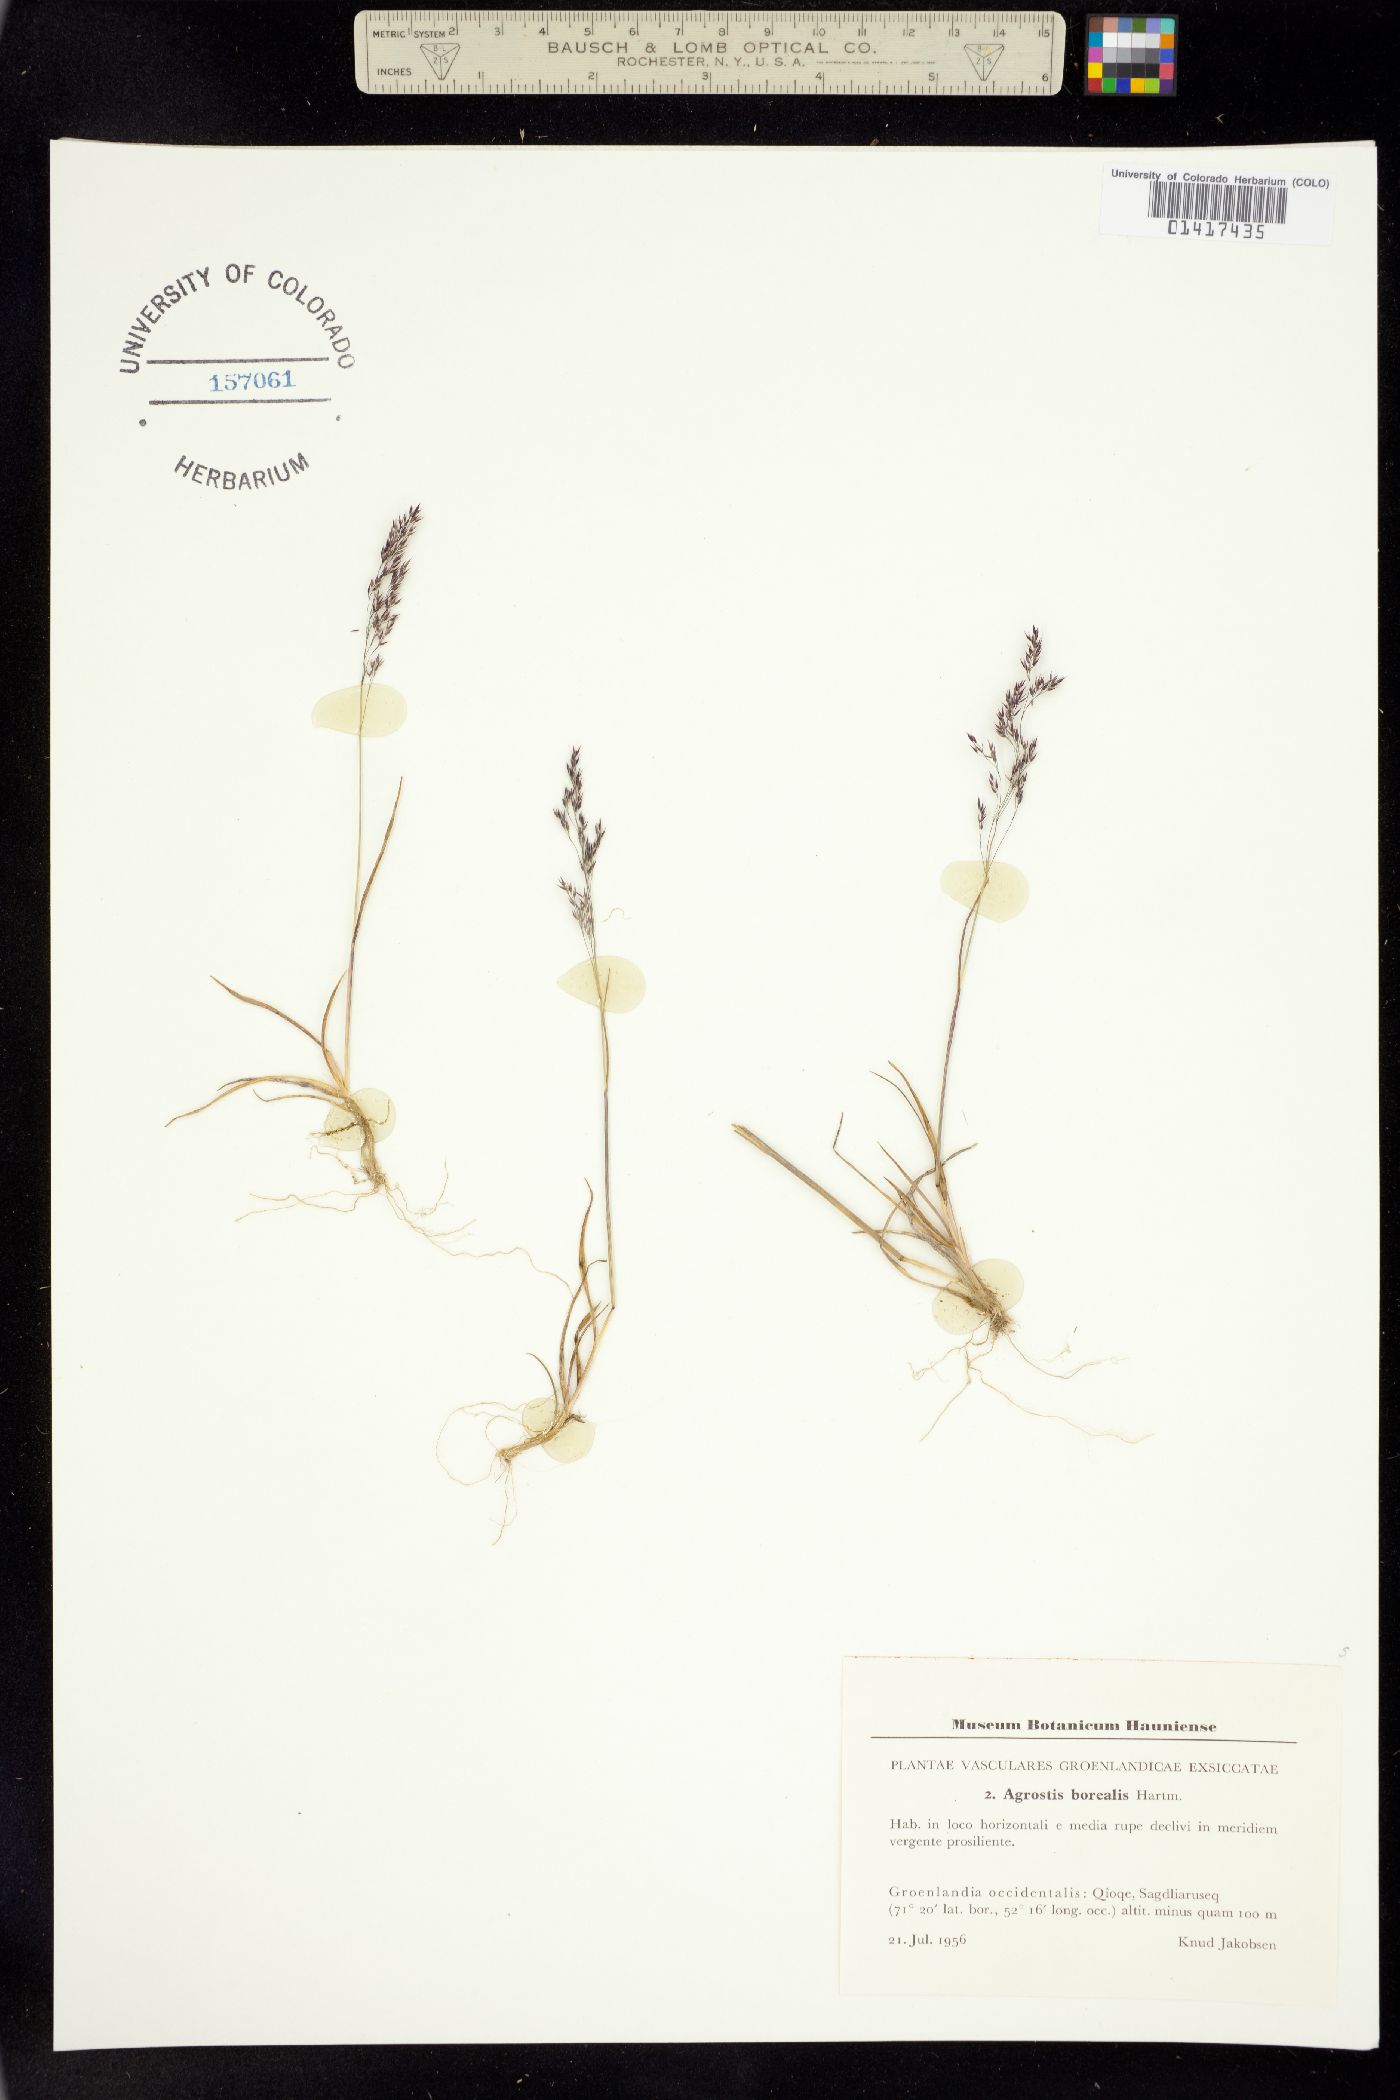 Agrostis image